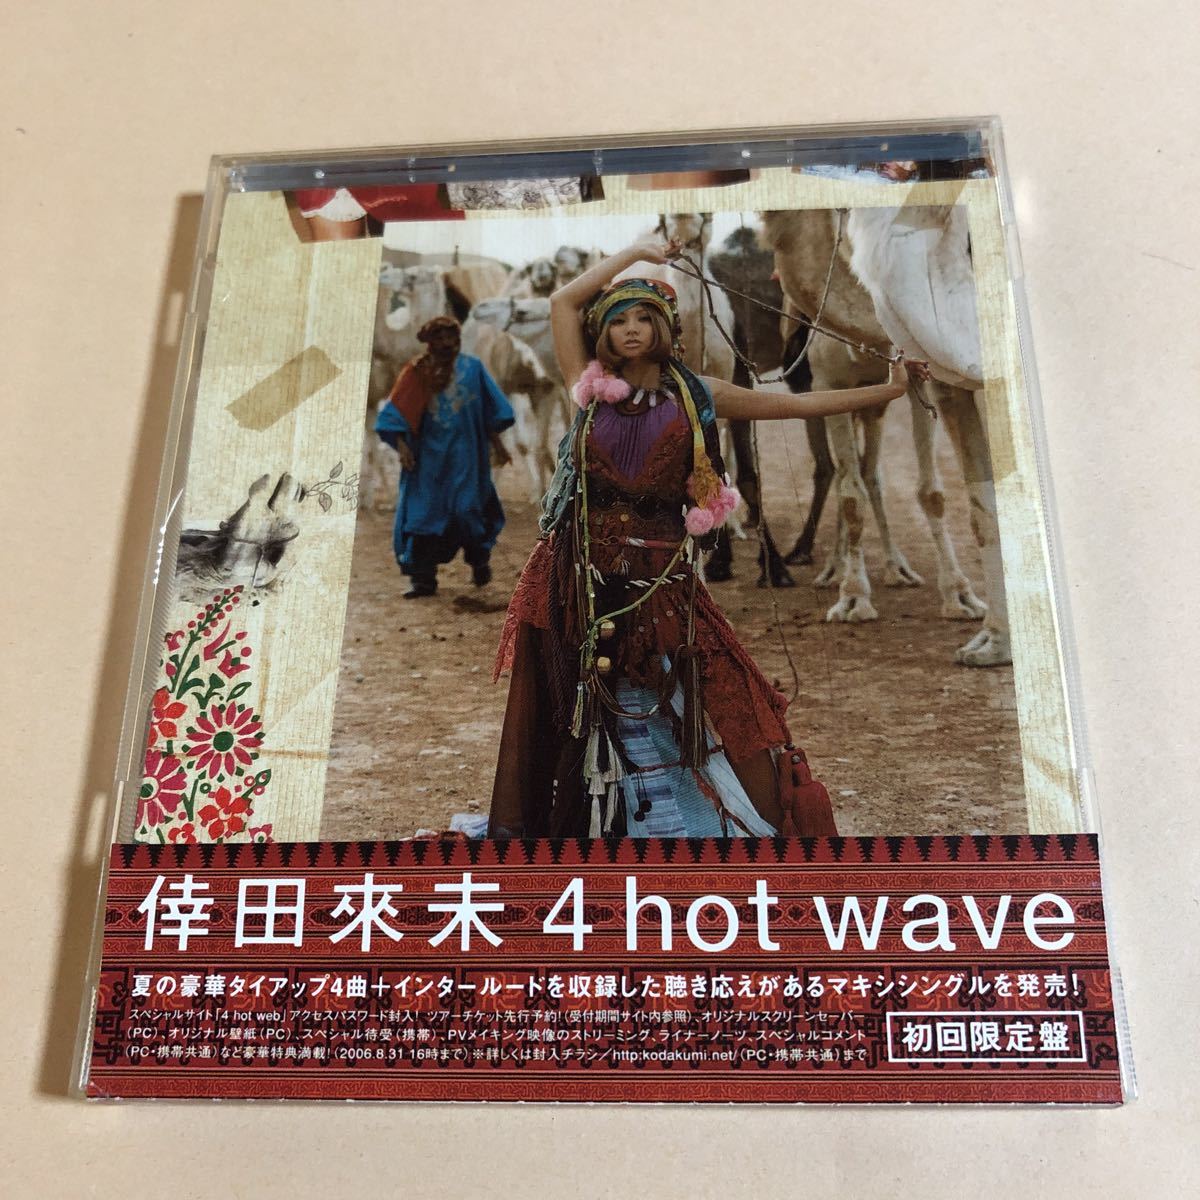 倖田來未 1CD「4 hot wave」初回限定盤_画像1